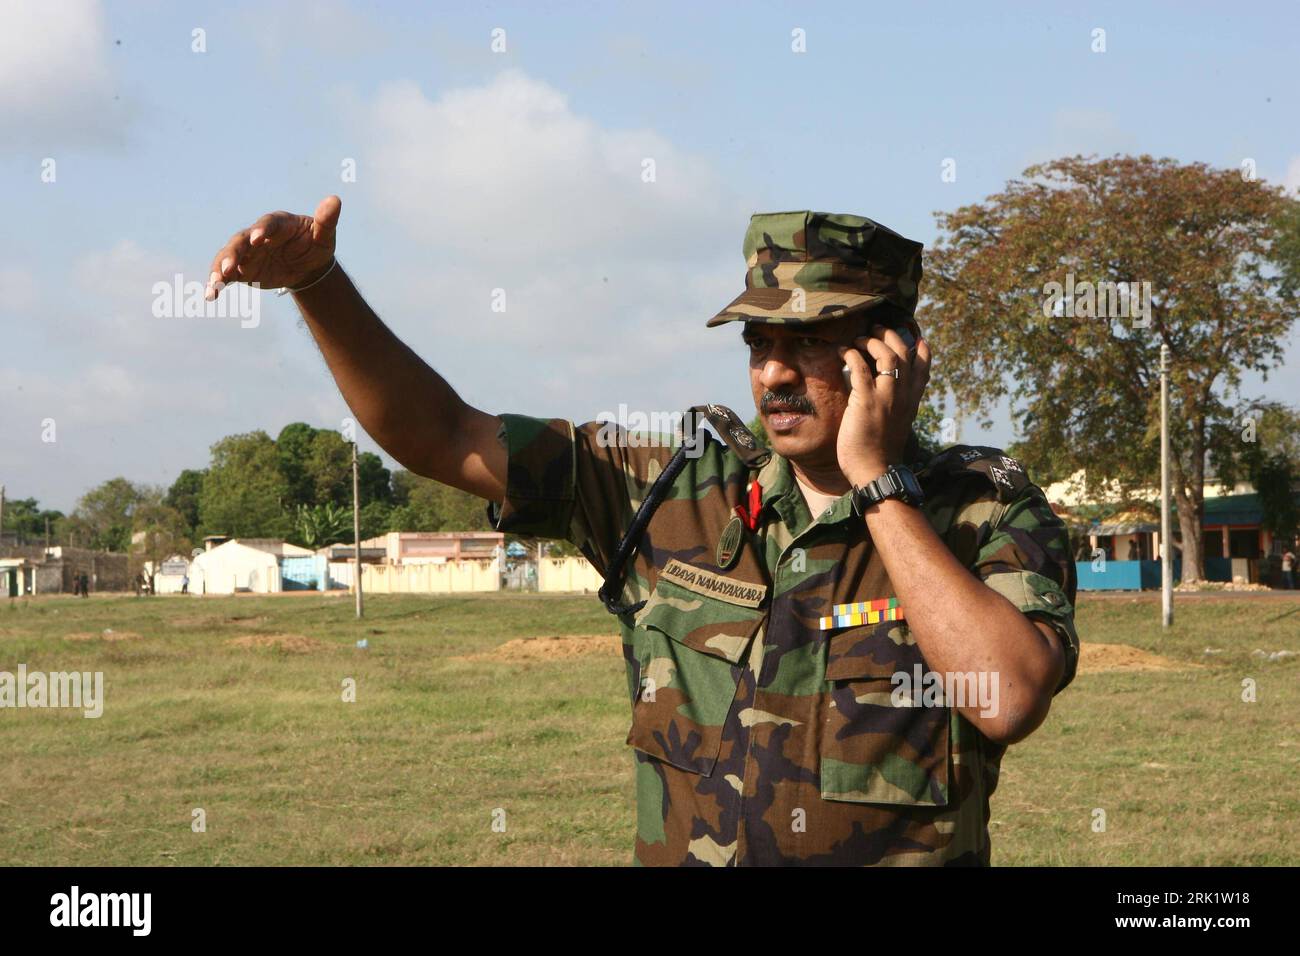 Bildnummer: 52987134  Datum: 24.04.2009  Copyright: imago/Xinhua Militärsprecher Udaya Nanayakkara spricht zu Journalisten in Kilinochchi: srilankische Truppen haben die ehemalige Rebellenhochburg im Norden Sri Lankas besetzt - PUBLICATIONxNOTxINxCHN , Personen; 2009, Kilinochchi, Sri Lanka, Gestik, Krieg, premiumd; , quer, Kbdig, Einzelbild, close, Randbild, Militaer, Staat, People    Bildnummer 52987134 Date 24 04 2009 Copyright Imago XINHUA Military spokesmen   speaks to Journalists in Kilinochchi Srilankische Troops have the former Rebel stronghold in North Sri Lanka occupied PUBLICATIONxN Stock Photo